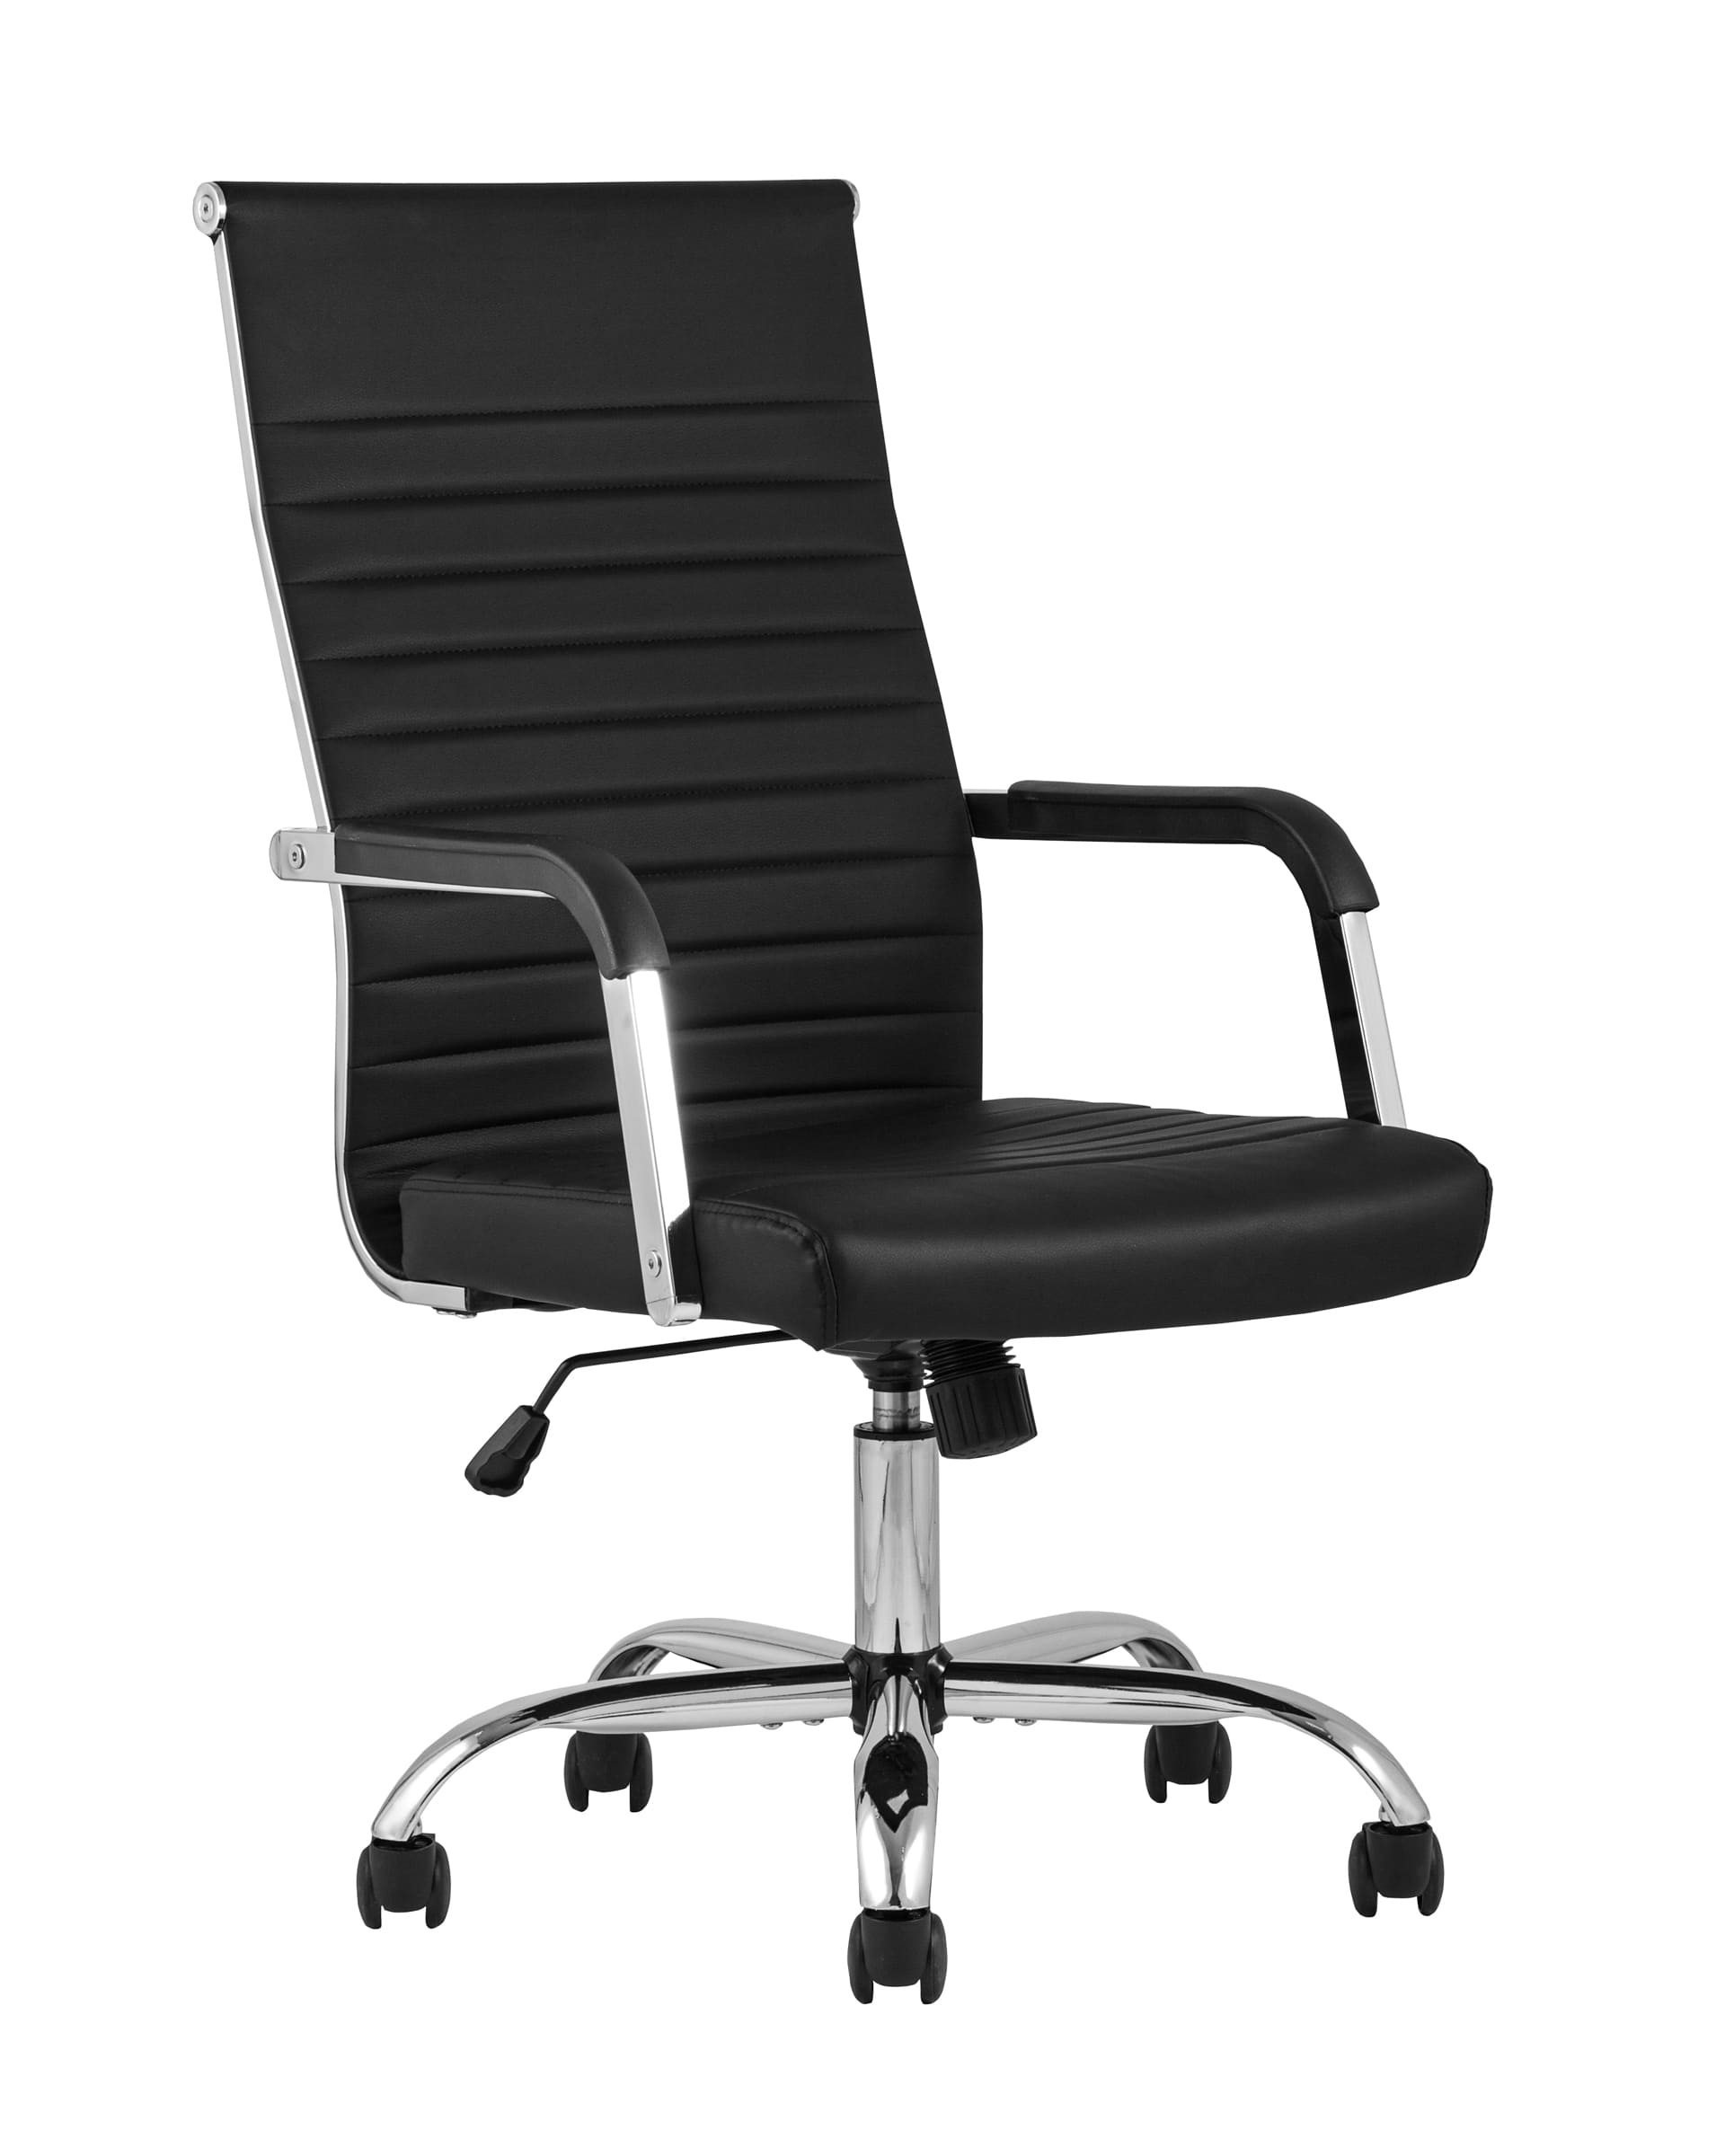 Компьютерное кресло TopChairs Unit офисное черное в обивке из экокожи, механизм качания Top Gun